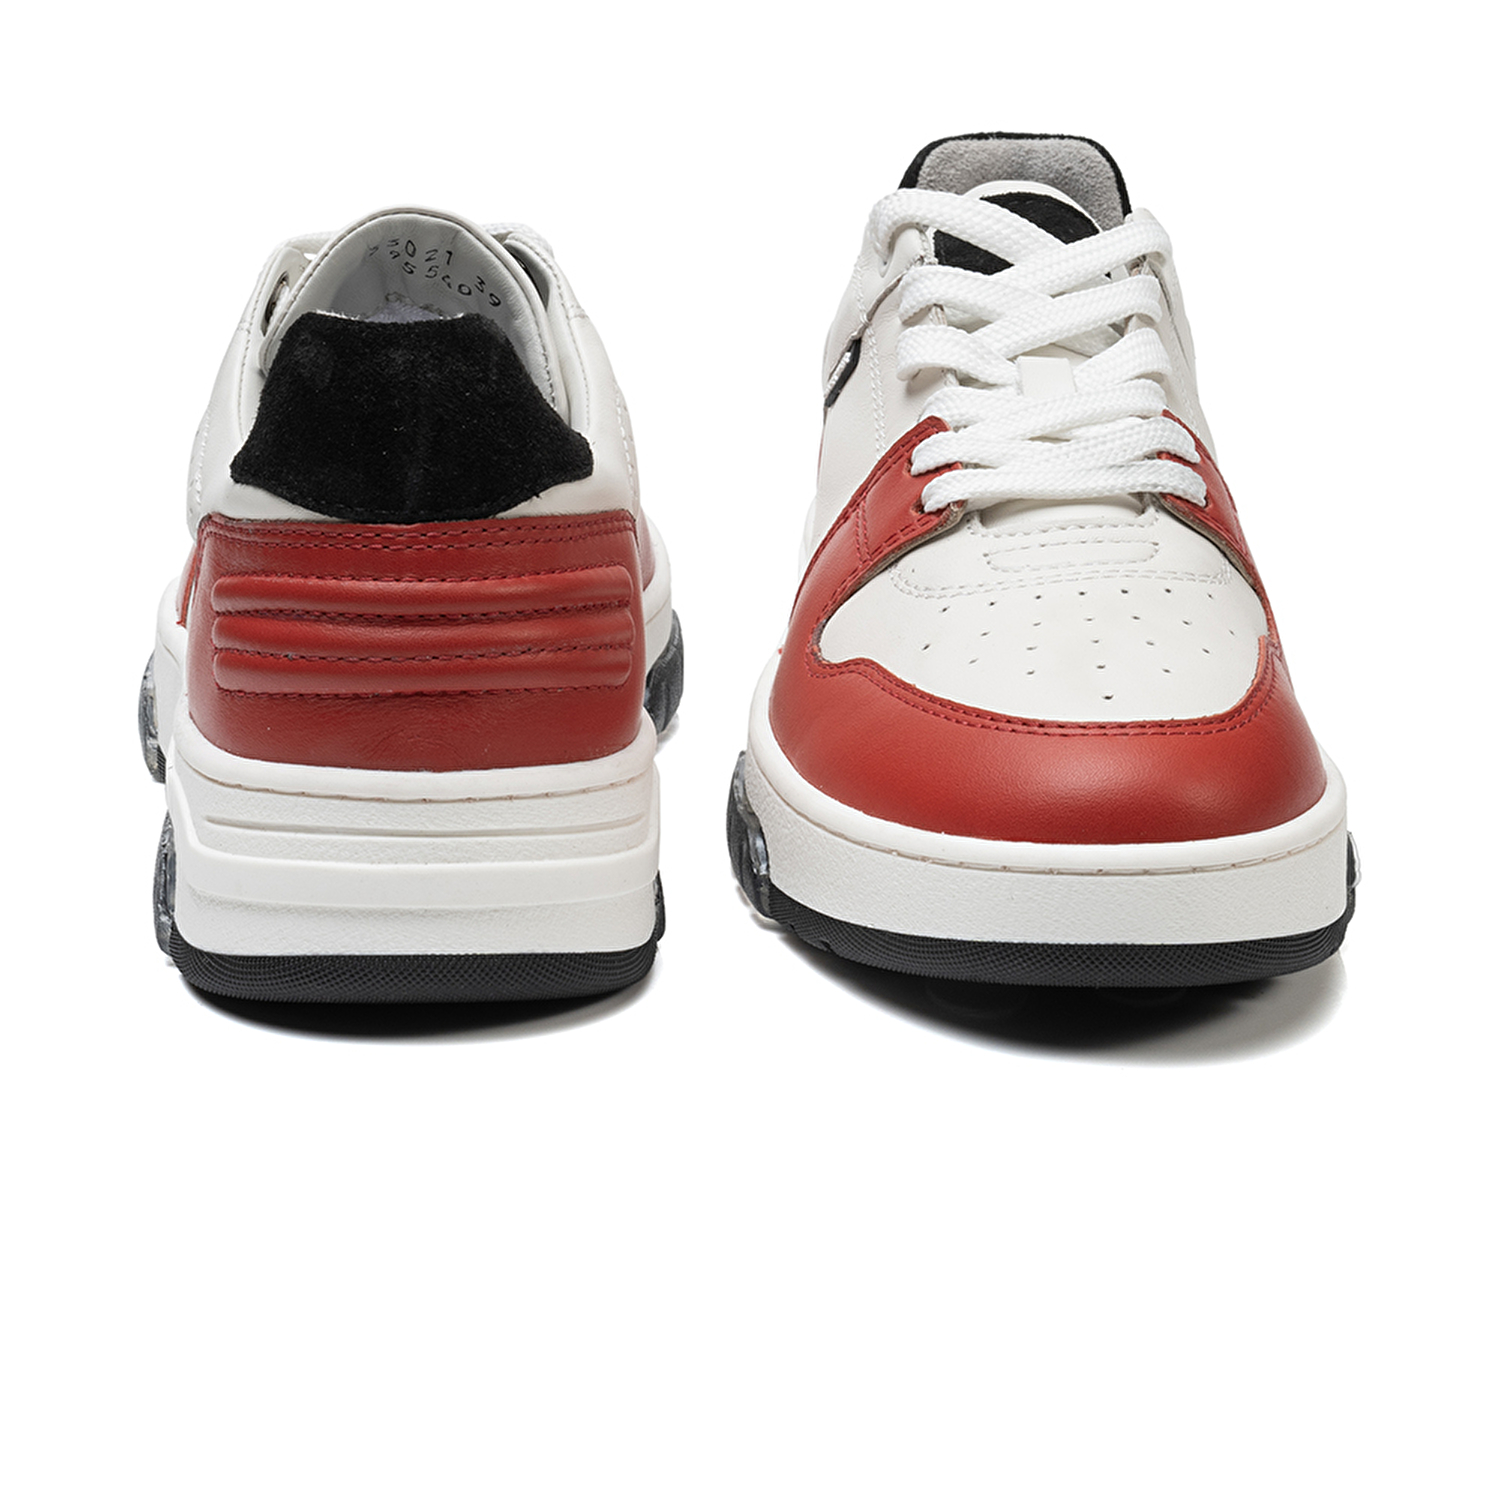 Kadın Beyaz Kırmızı Hakiki Deri Sneaker Ayakkabı 3K2SA33021-6